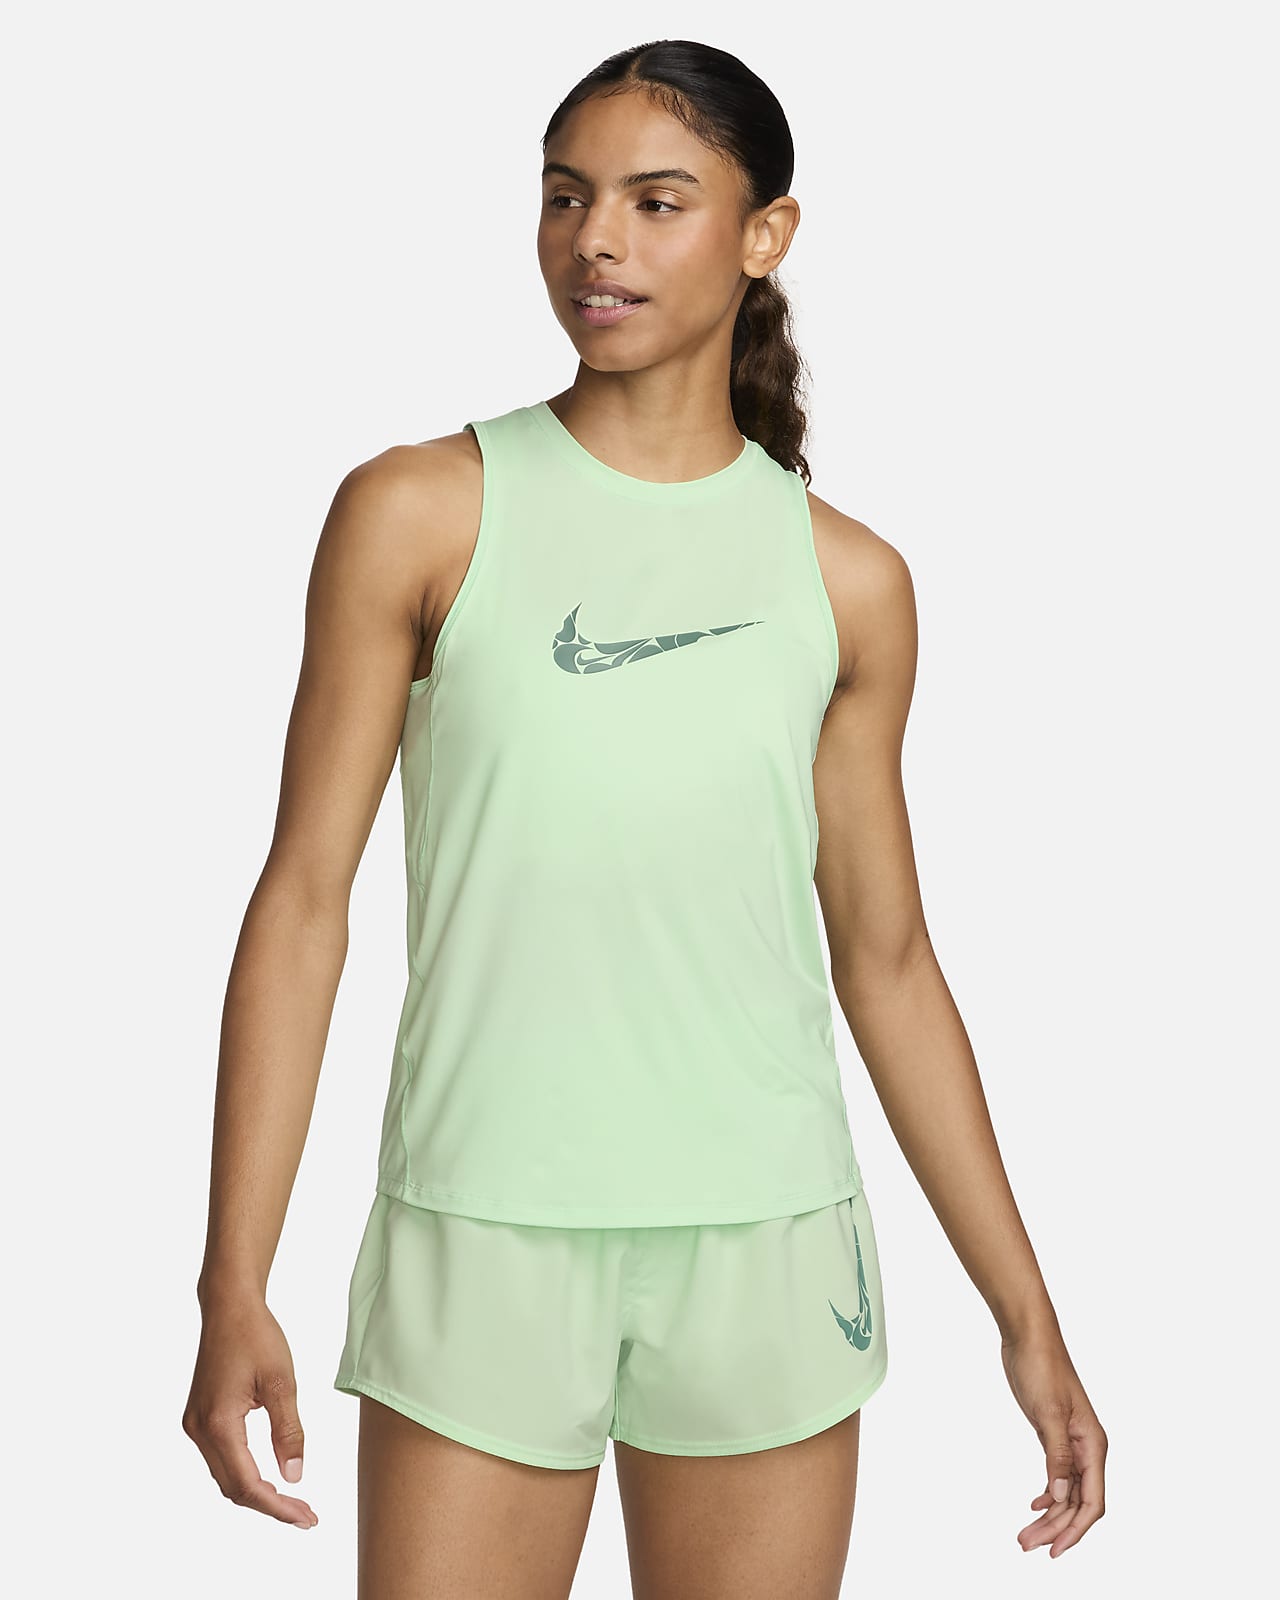 Camisola de running sem mangas com grafismo Nike One para mulher